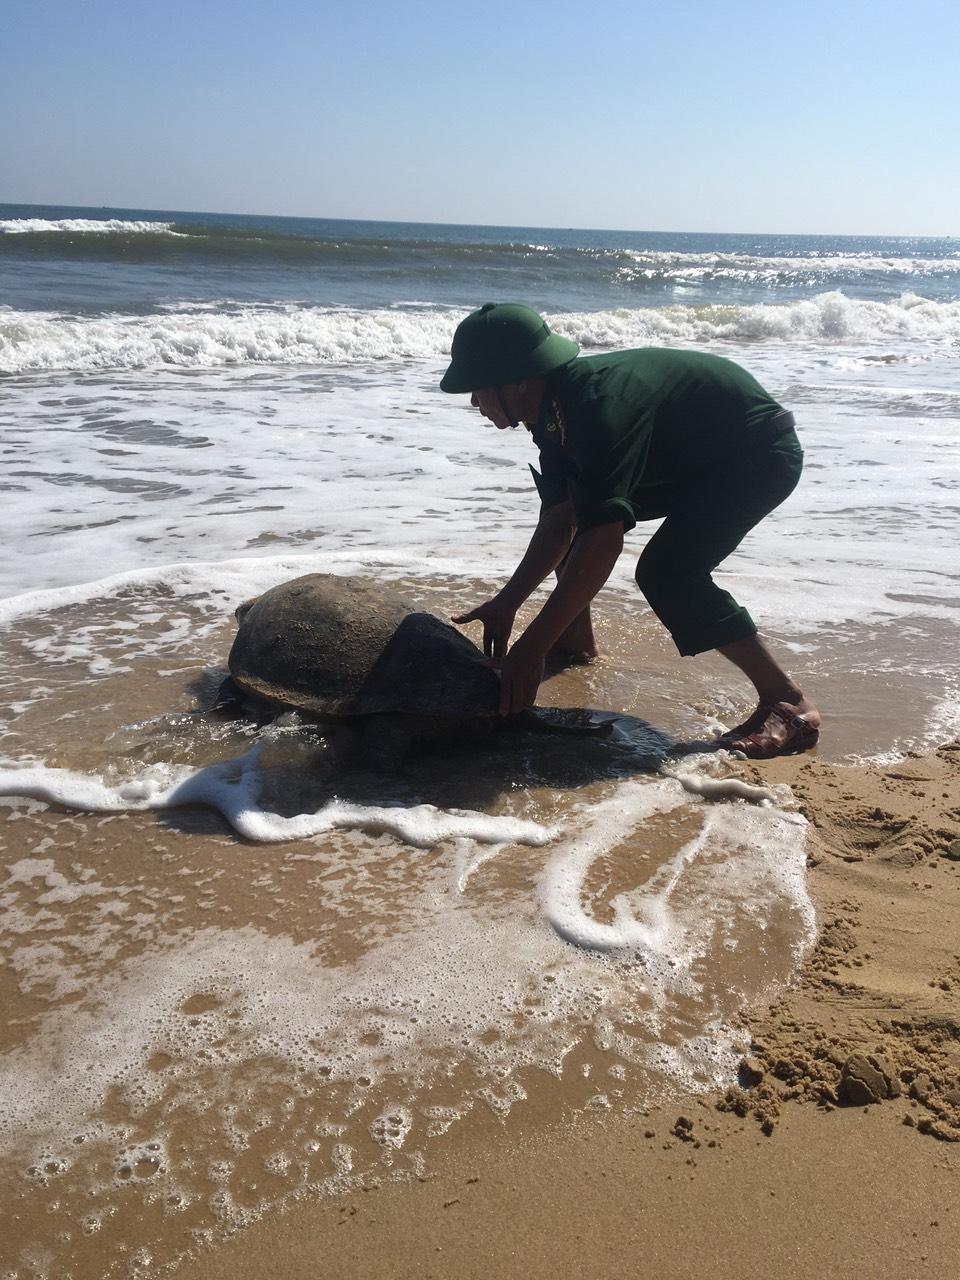 Cứu hộ thành công một cá thể rùa biển bị mắc lưới cách bờ biển xã Trung Giang, huyện Gio Linh, tỉnh...